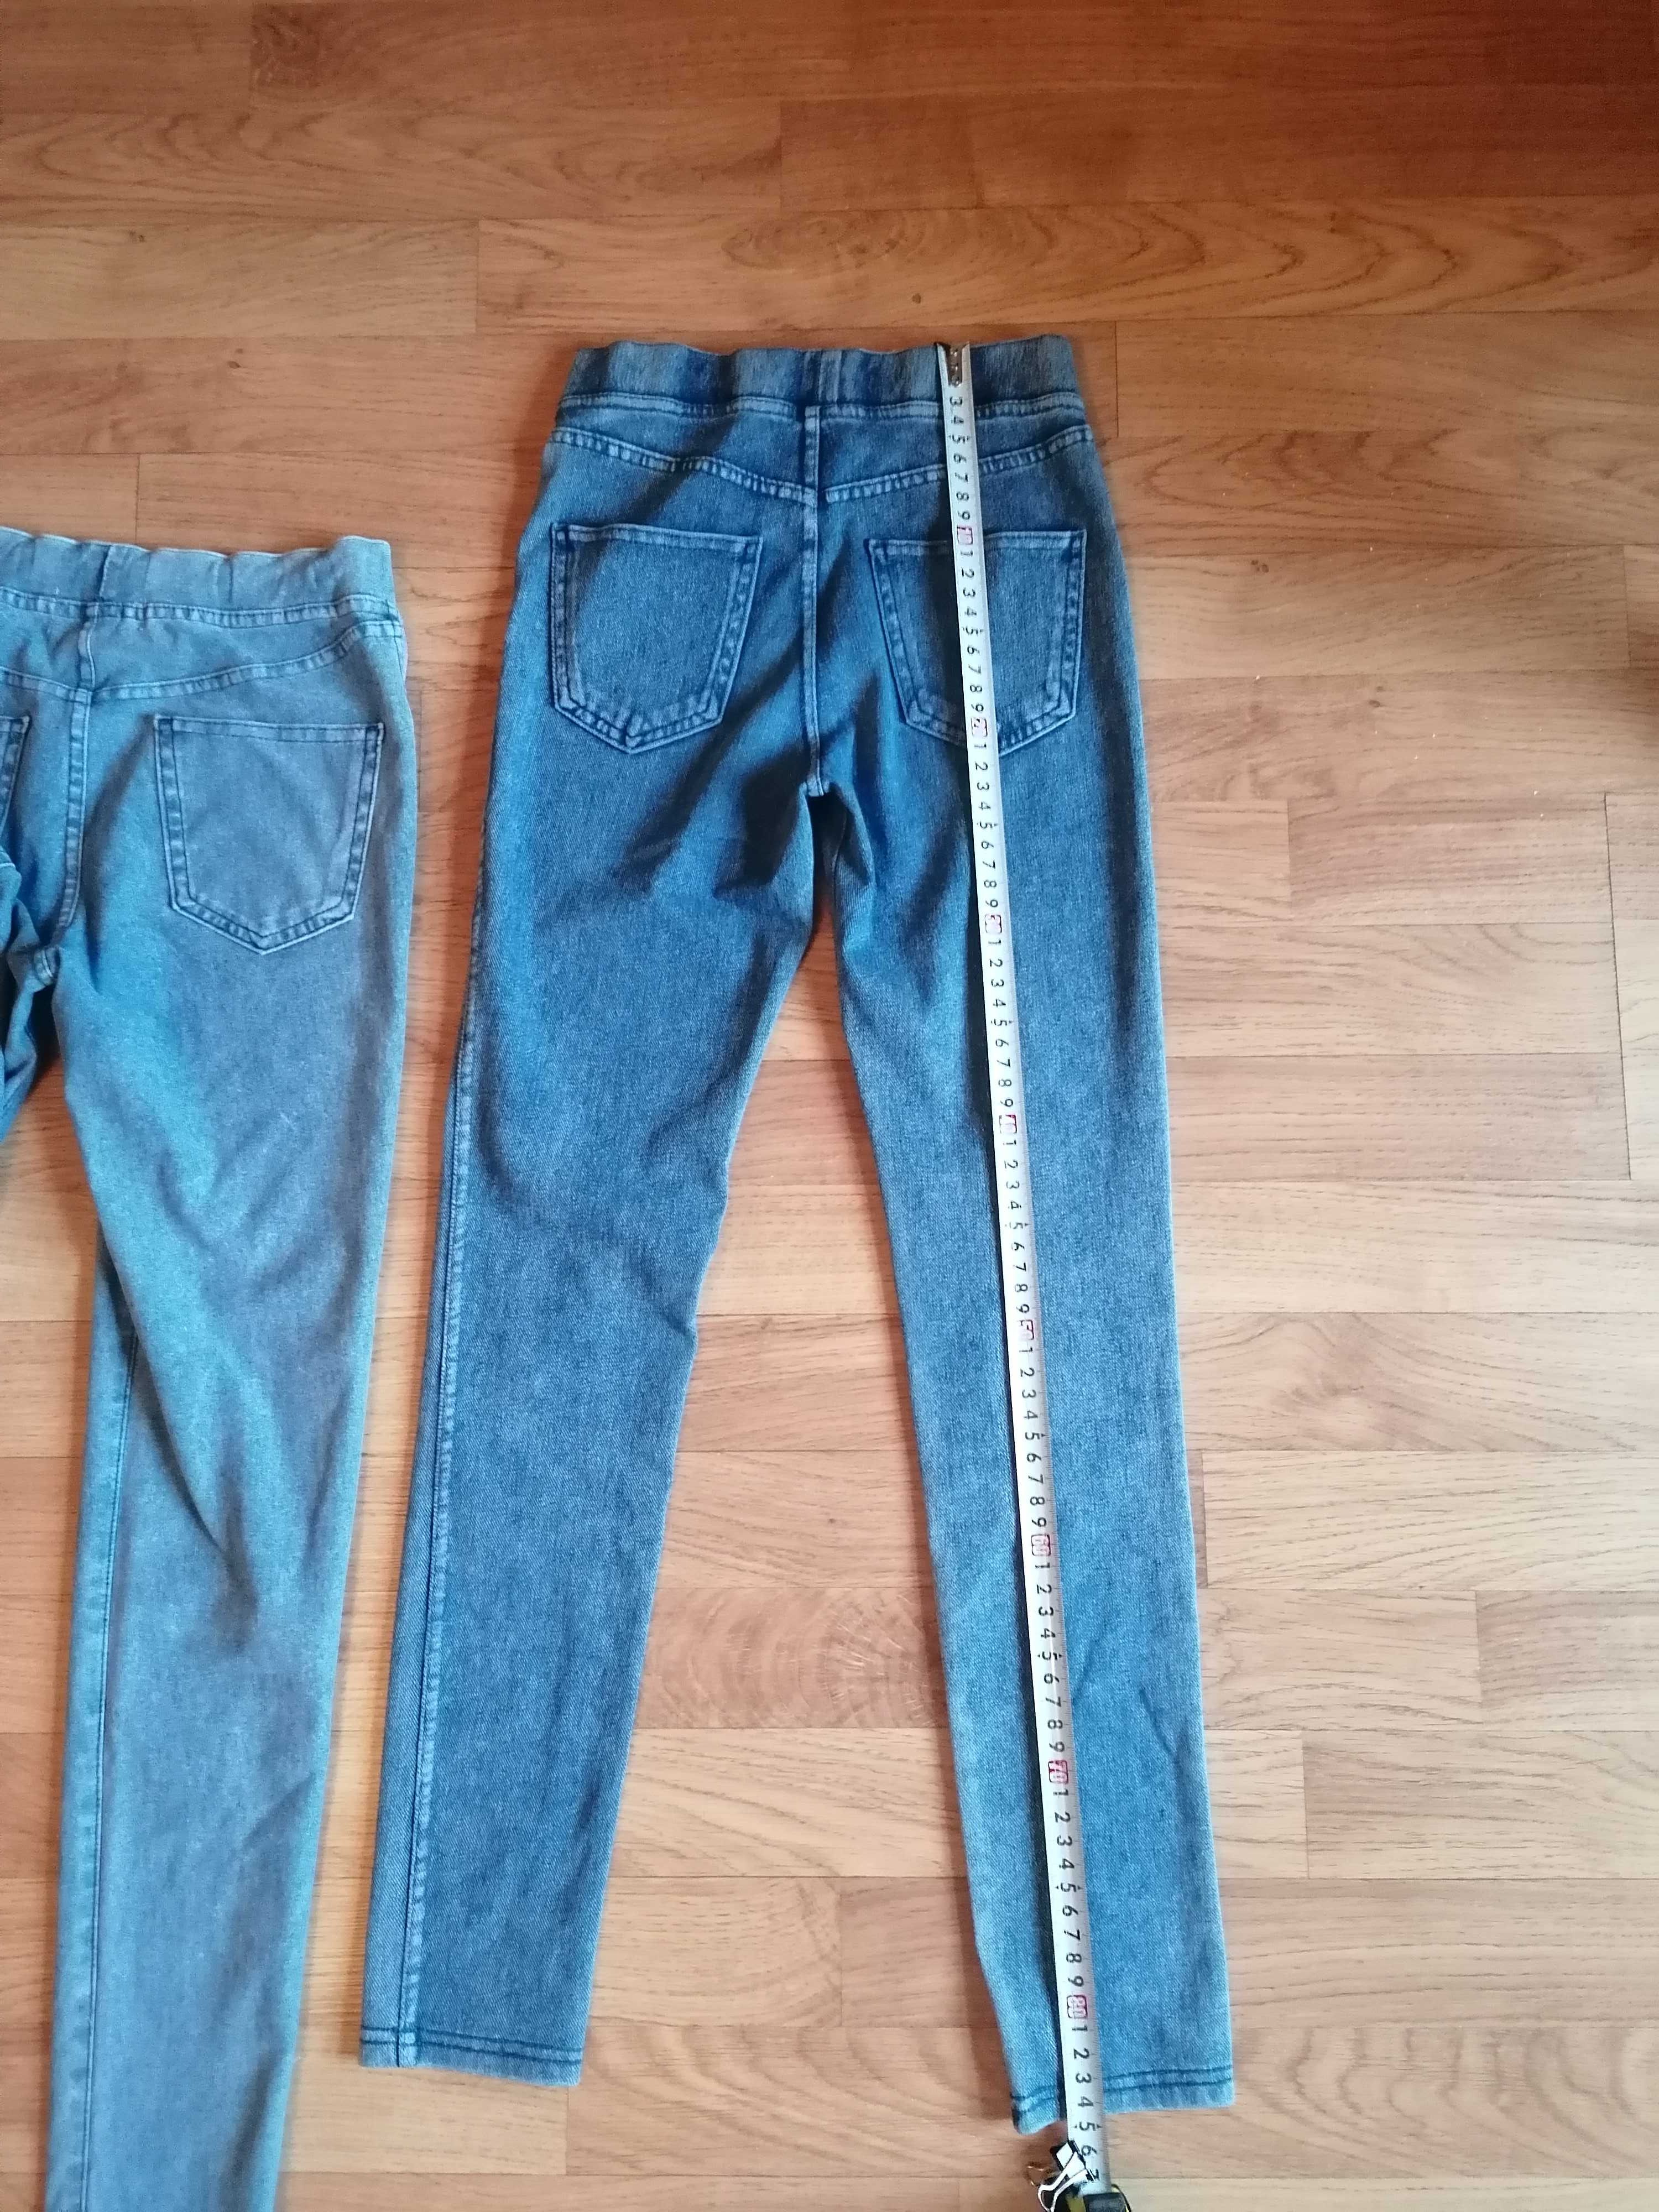 Spodnie 140/146 h&m, elastyczne jeansowe, bluzka Smyk+gratis niebieska